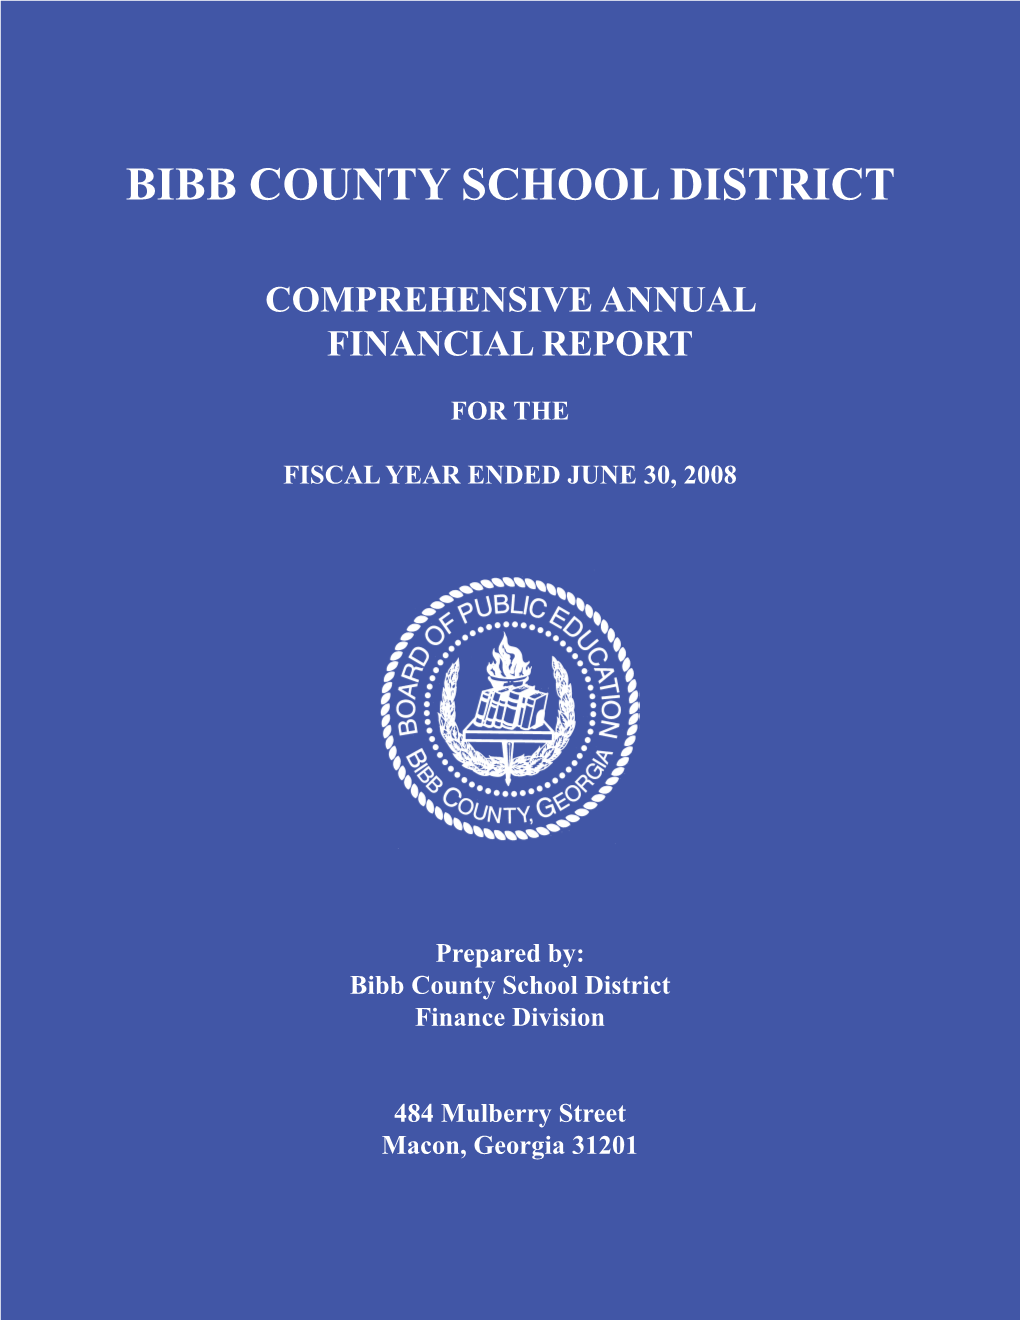 Board of Public Education for Bibb County